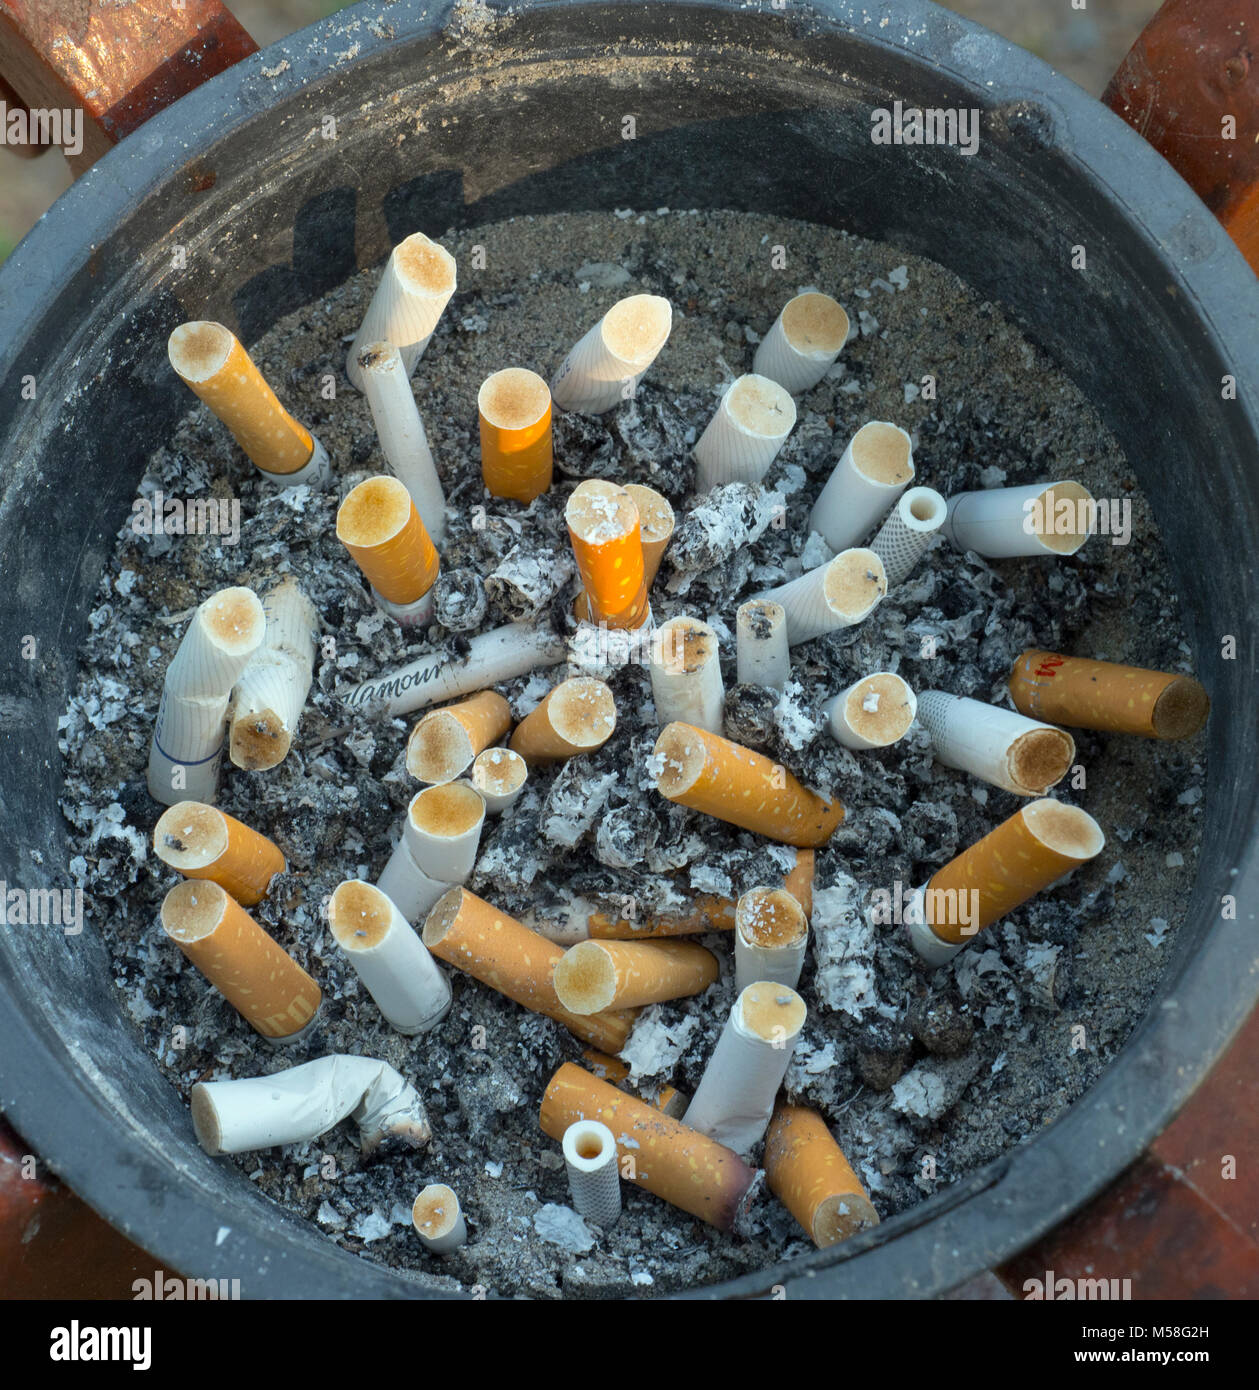 Le sigarette terminano nel posacenere nell'area fumatori dell'hotel Foto Stock